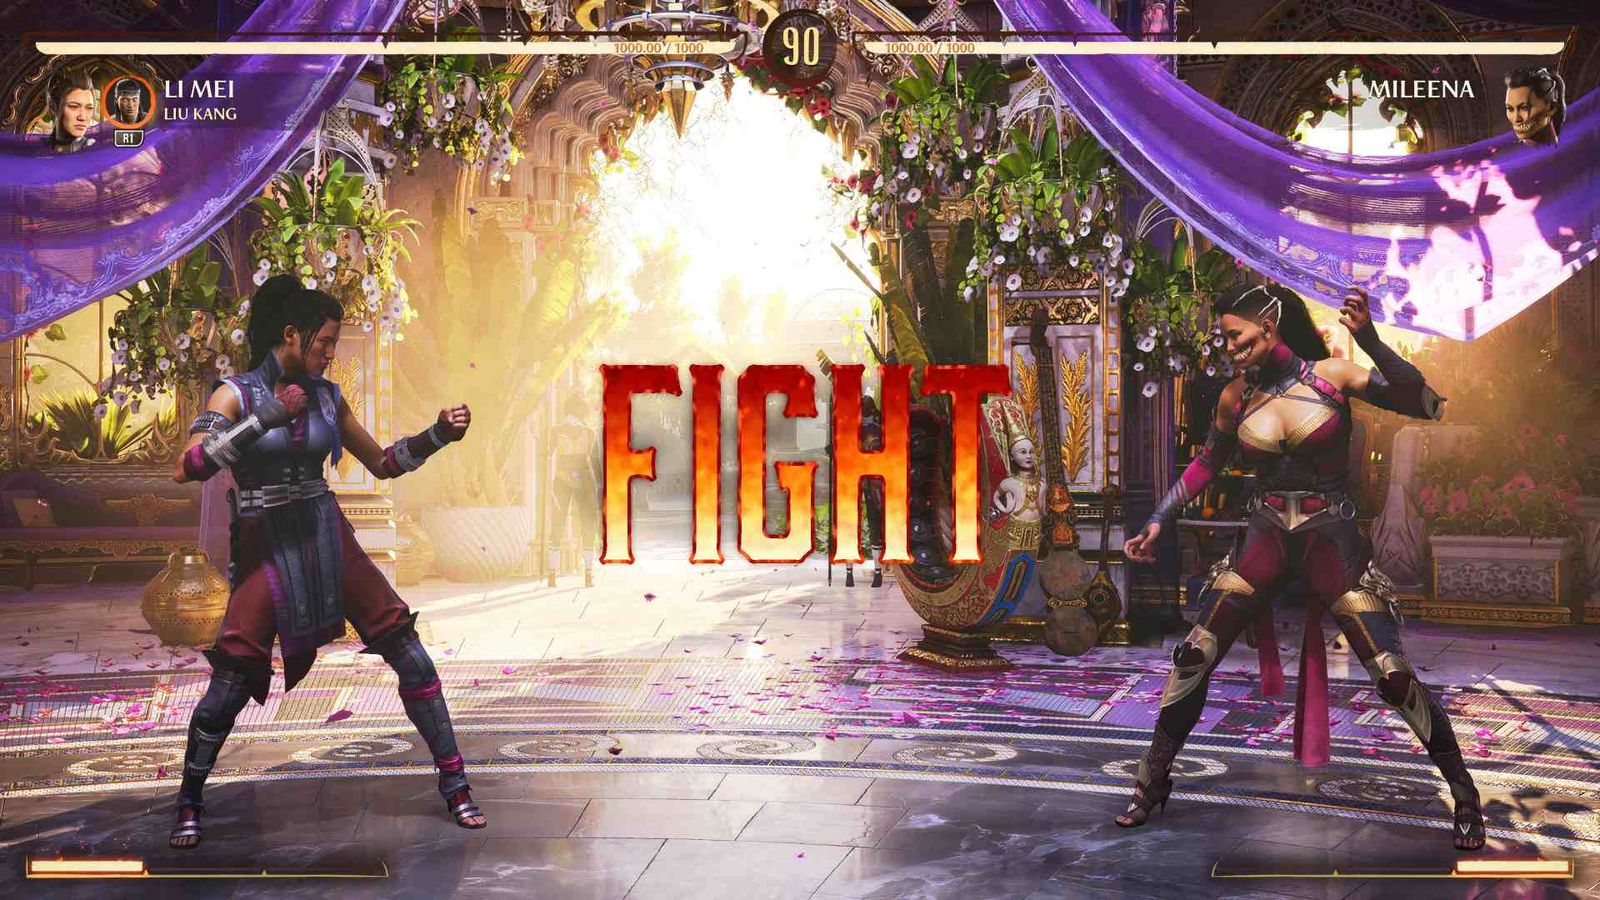 Li Mei and Mileena about to fight in Mortal Kombat 1.